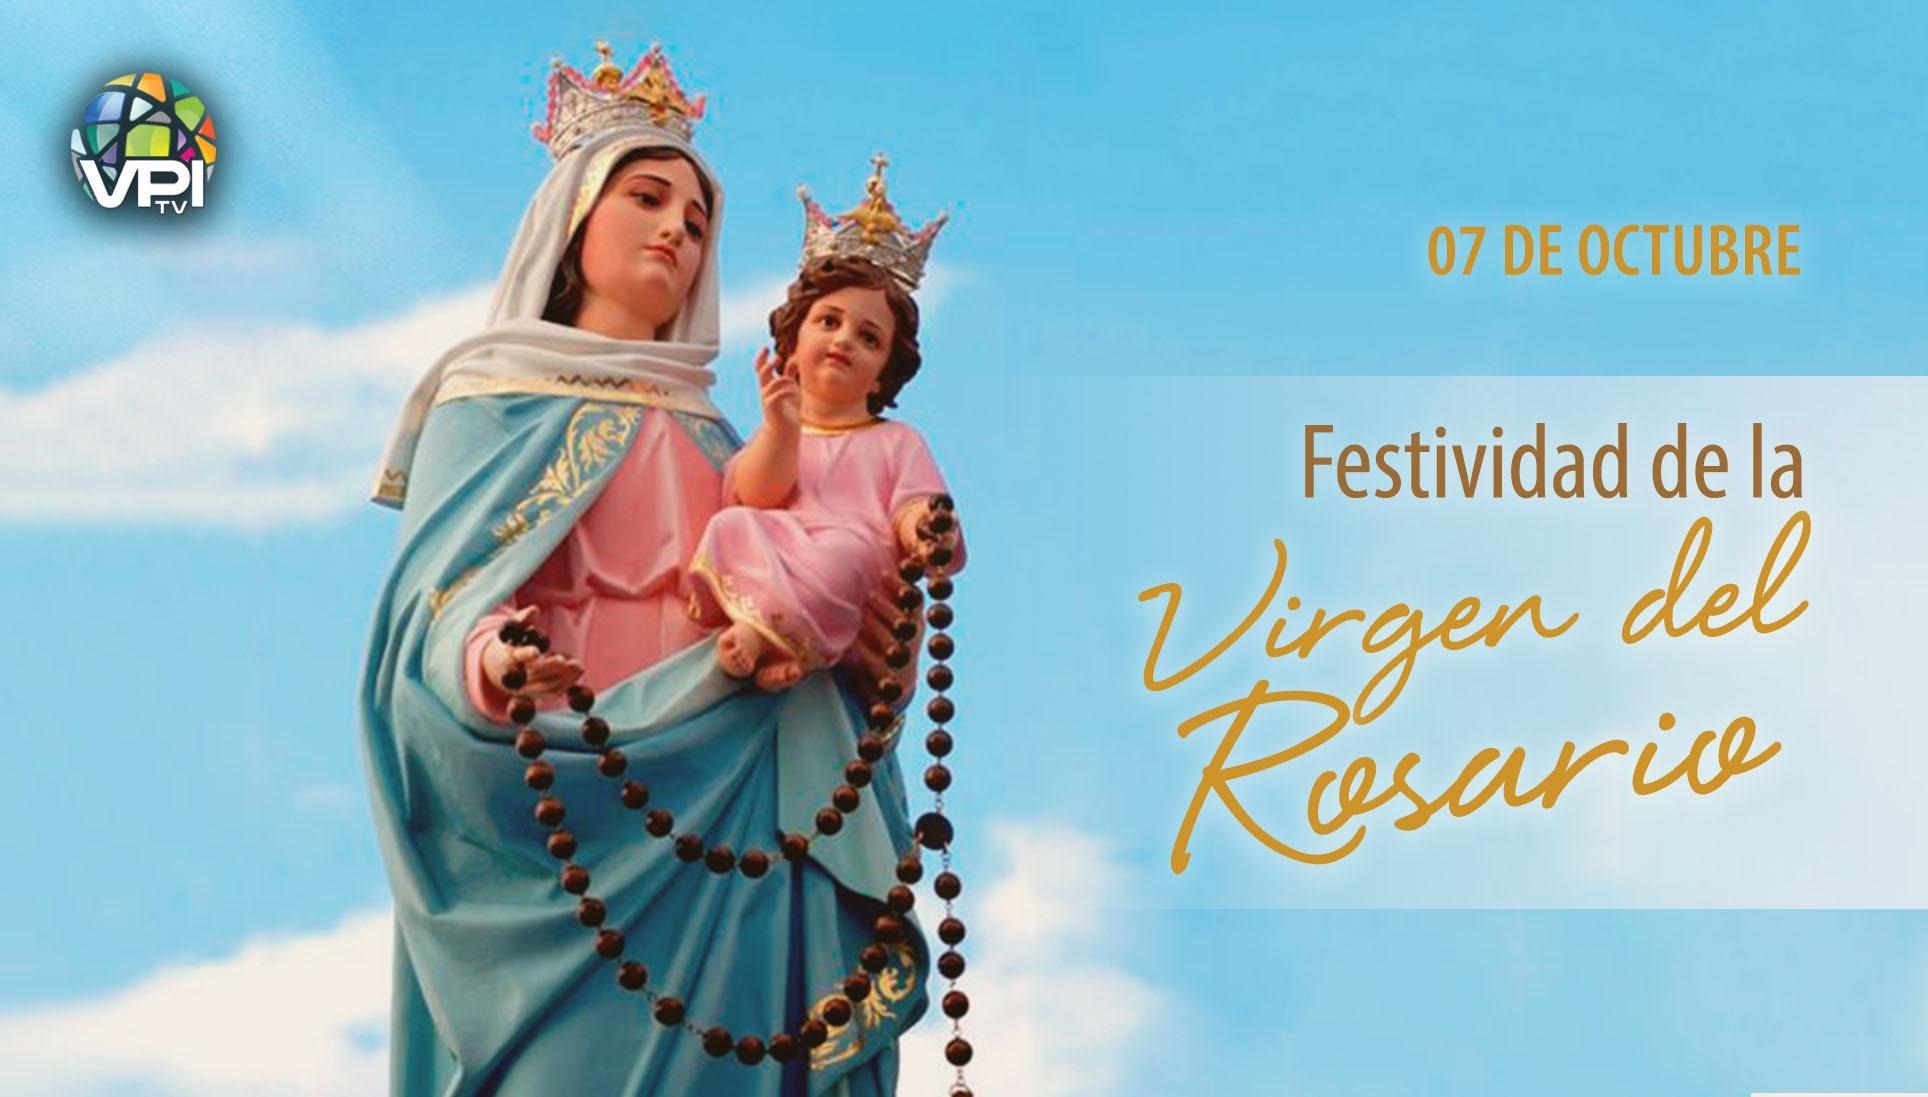 A fondo principio Cartas credenciales Festividad de la Virgen del Rosario - VPITV